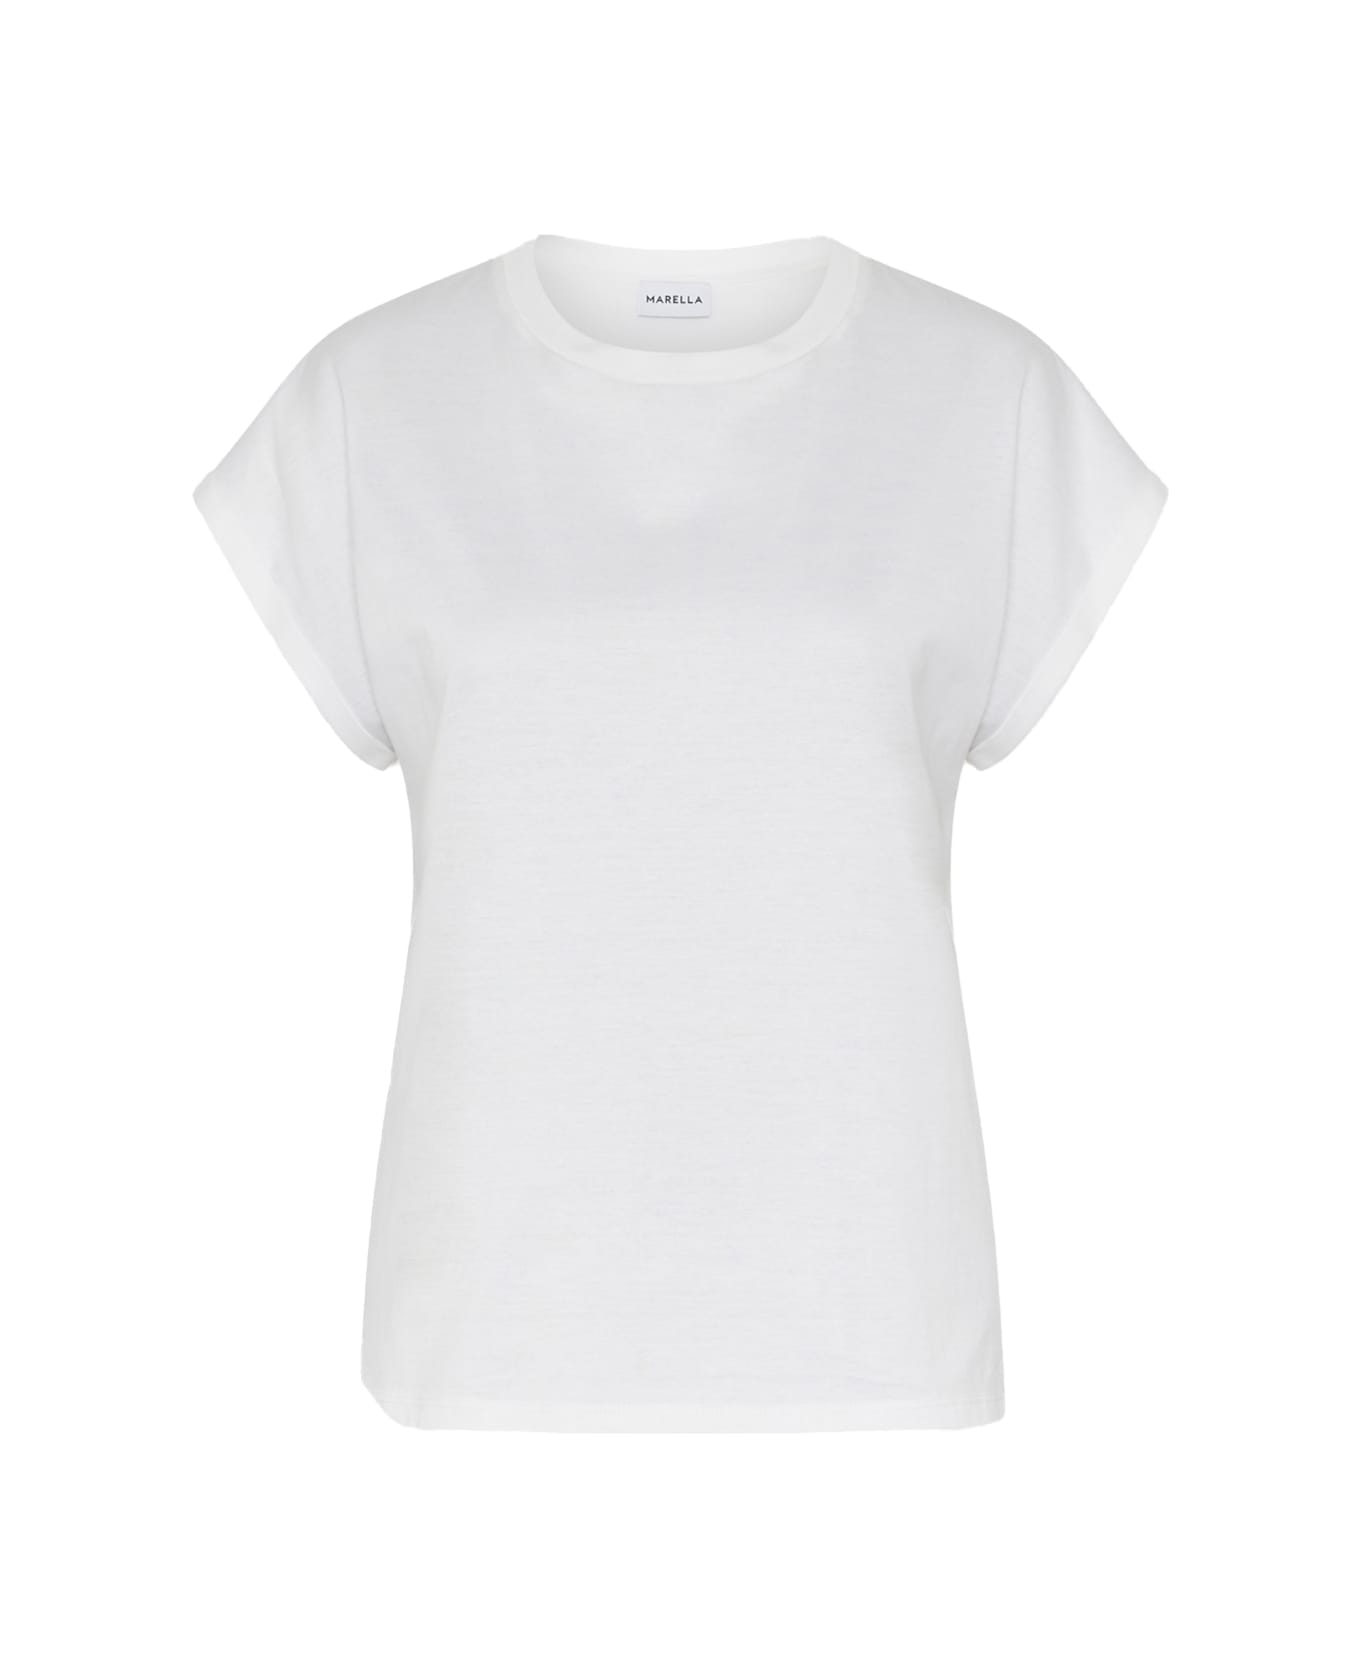 Marella White T-shirt - BIANCO Tシャツ